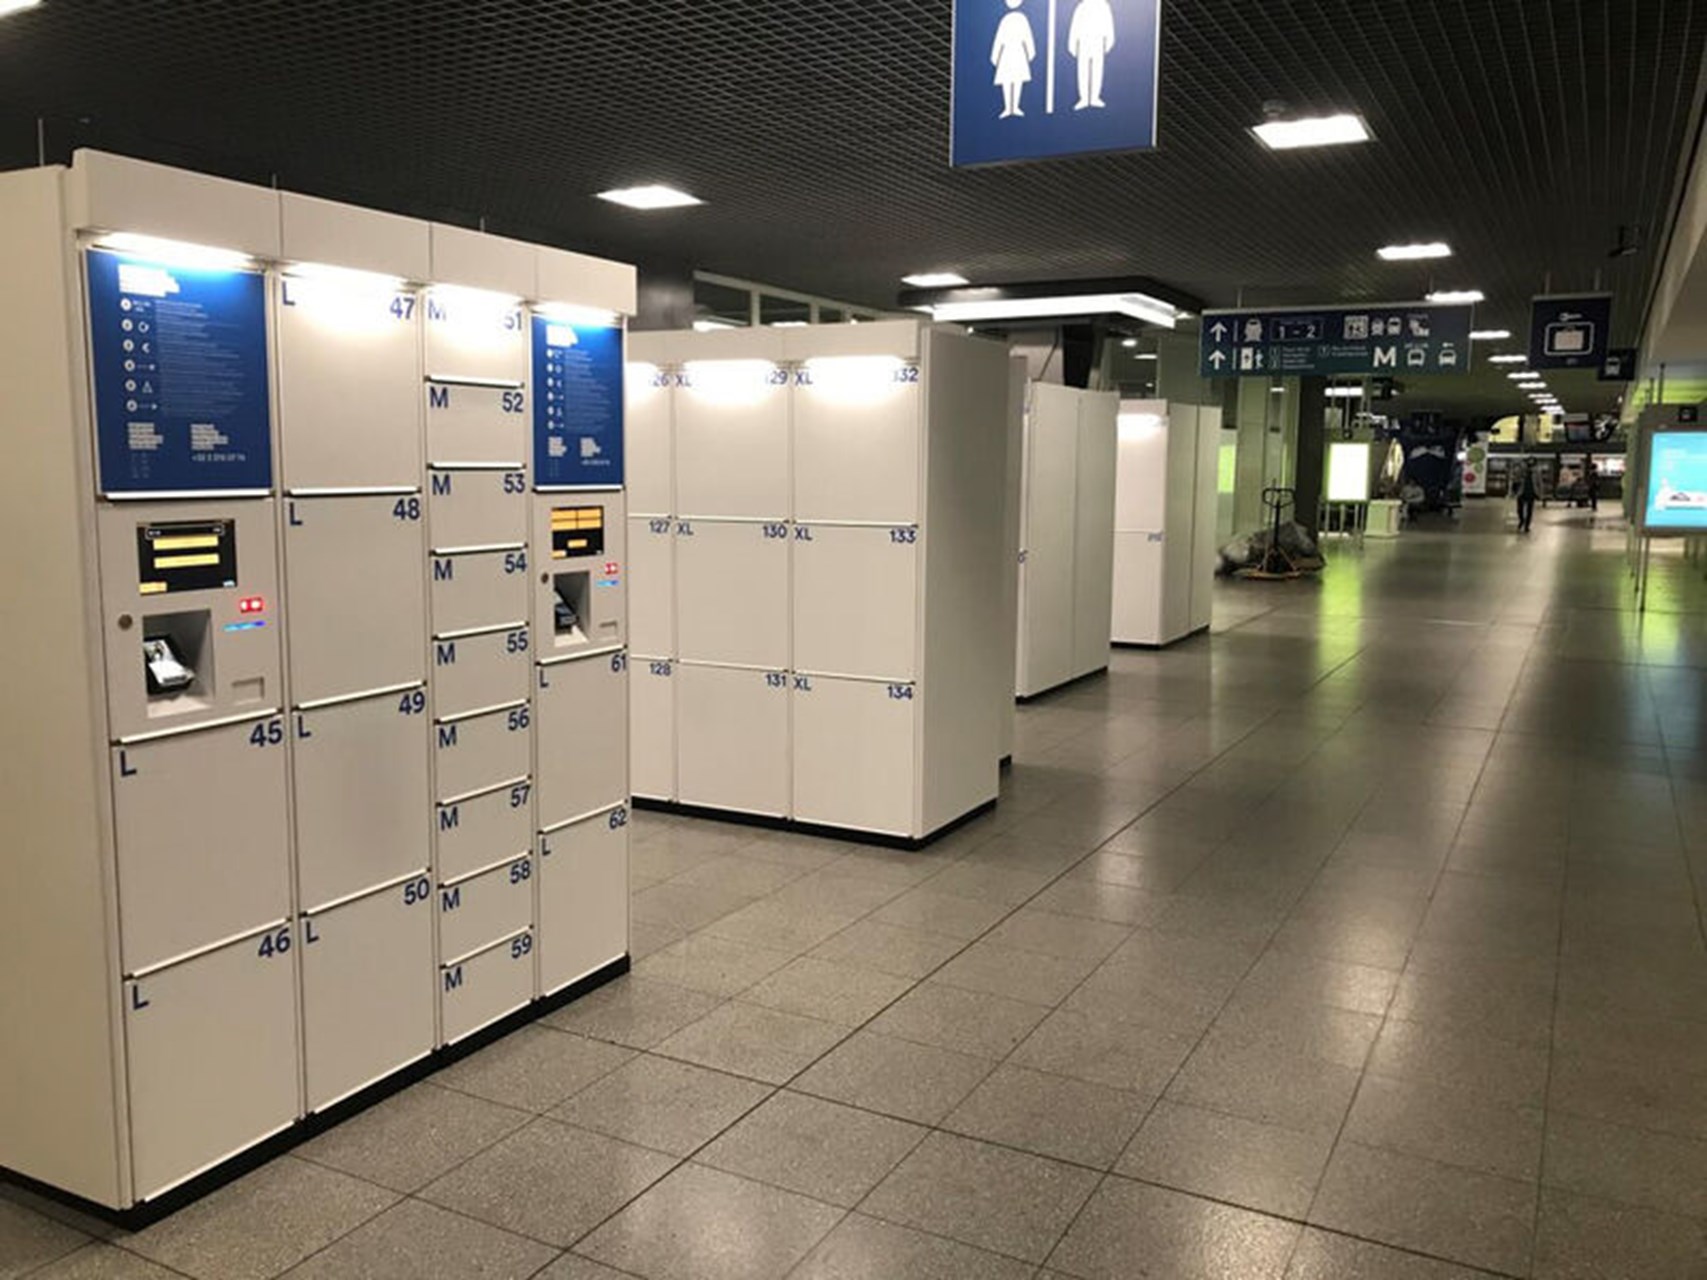 Primat's automatic luggage lockers in Belgium